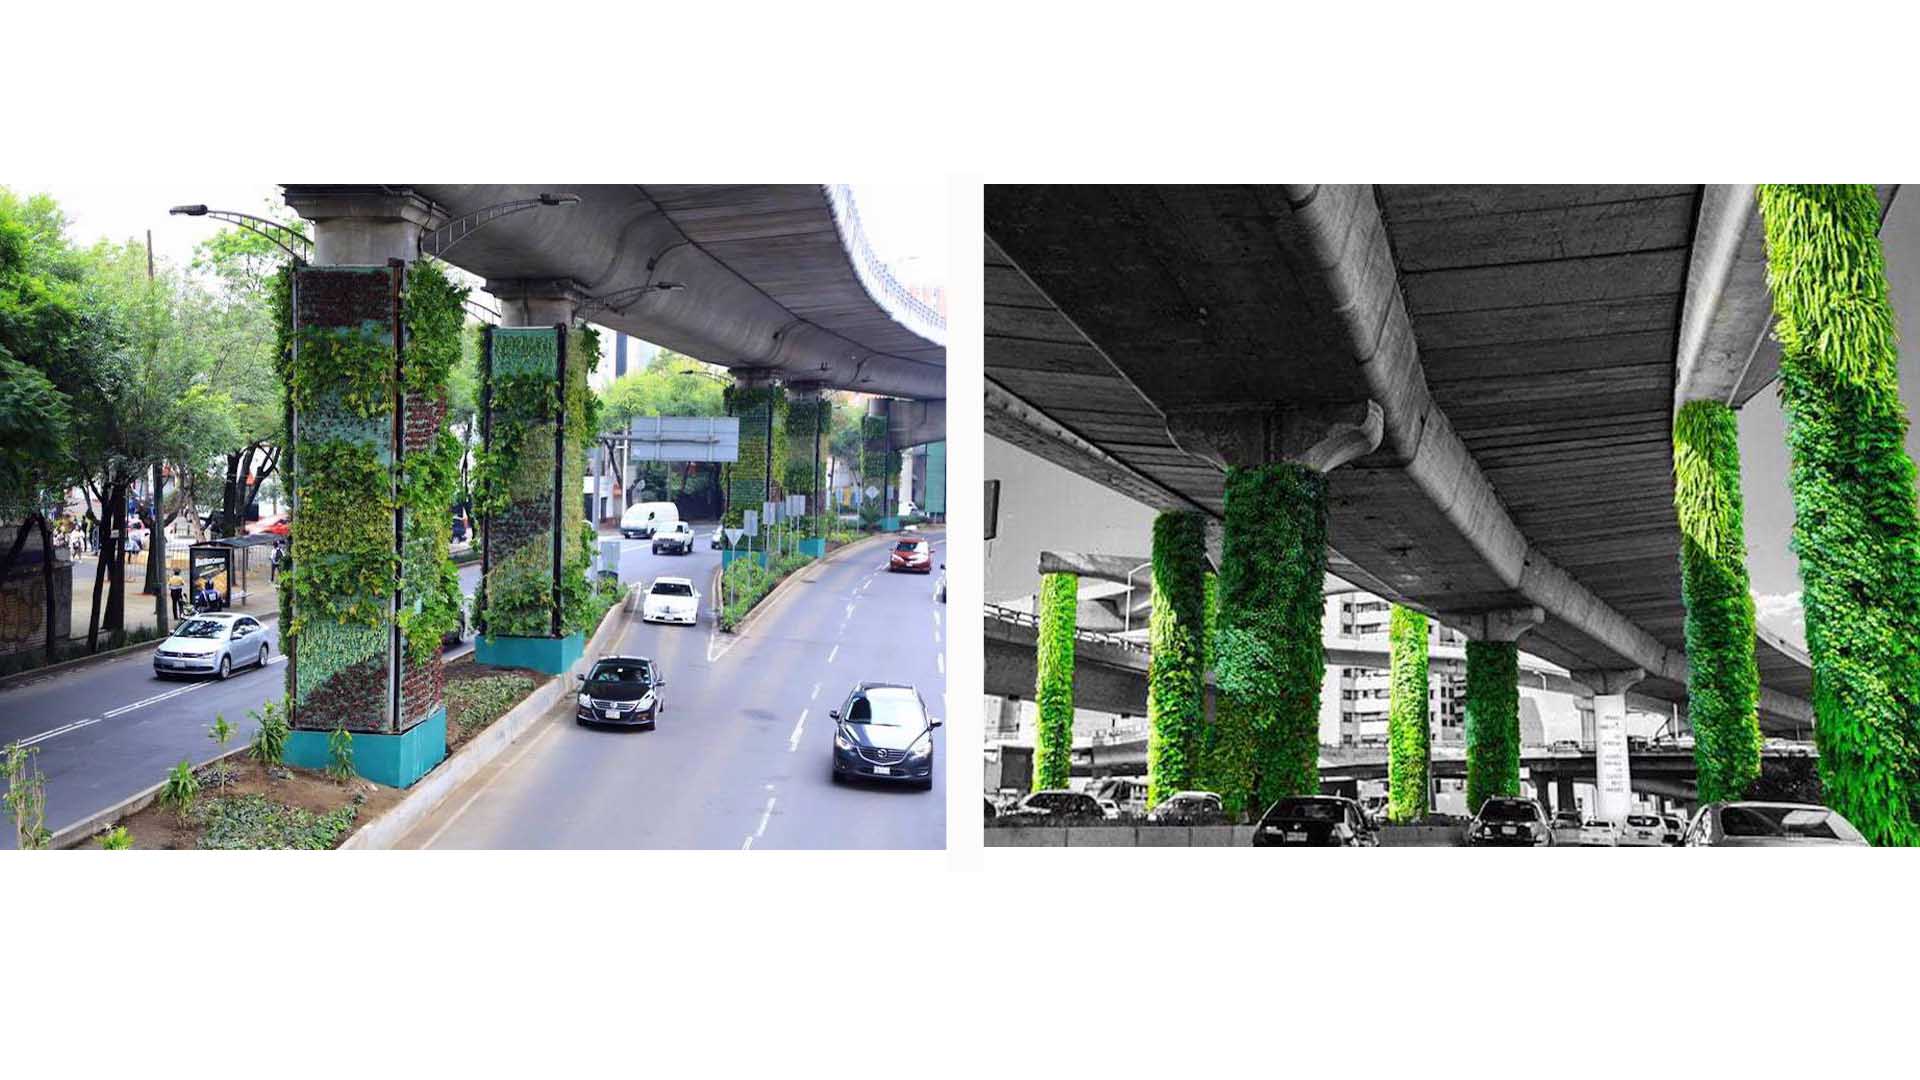 México revolucionó el concepto de llevar la naturaleza a los urbanismos y ha convertido las columnas de uno de sus puentes en hermosos invernaderos